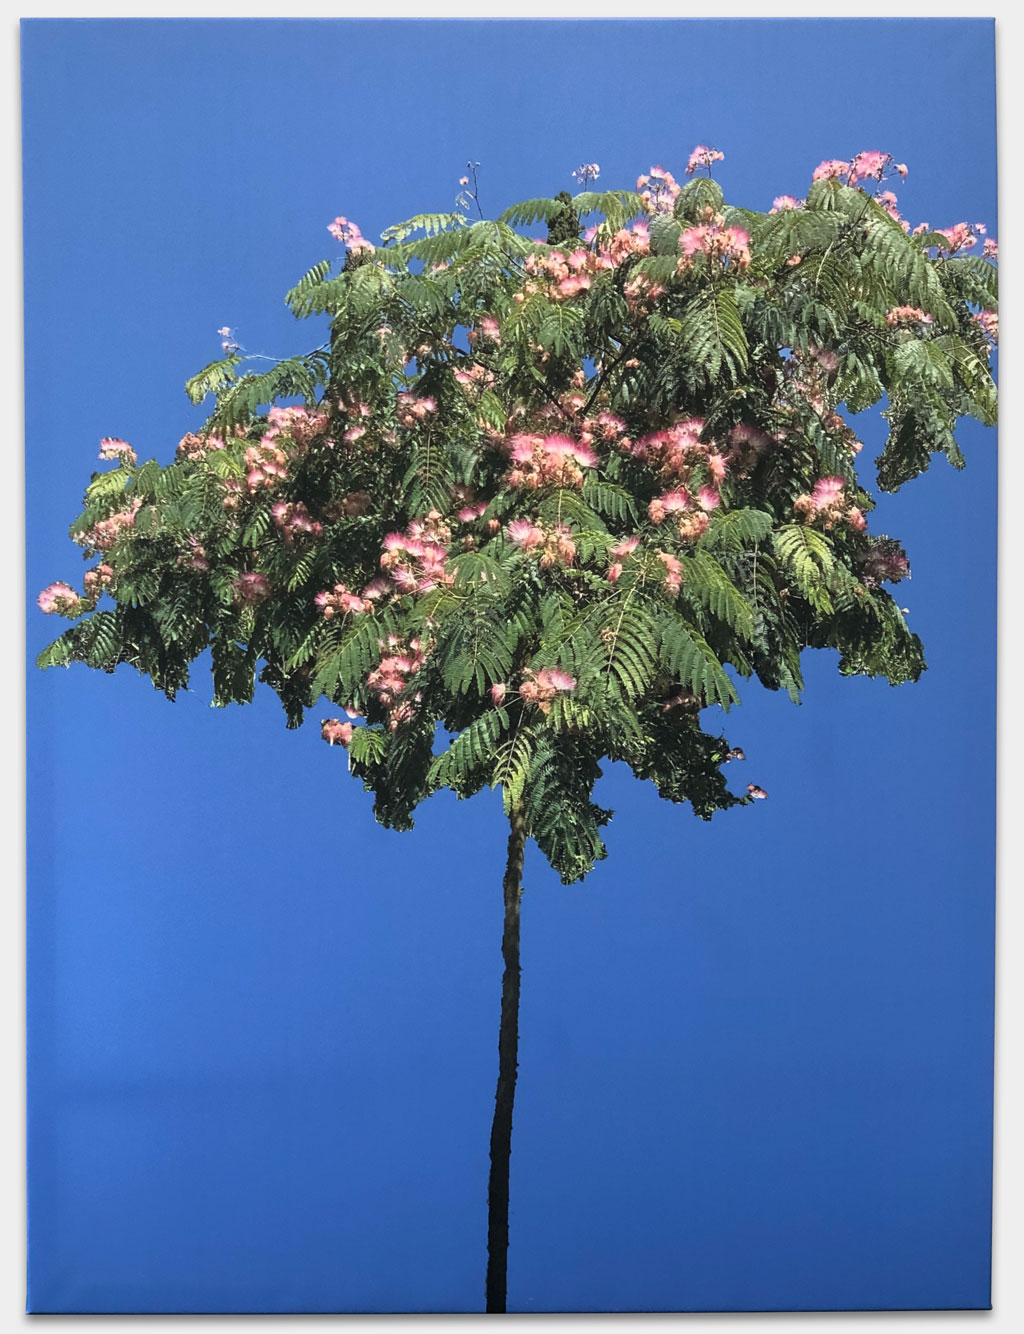 Ruge, Nina, Fernsehmoderatorin, „Seidenakazie“, 120x160 cm, Fotografie auf Leinwand gedruckt, Keilrahmen, Inspiriert von ihrem Lieblingsbaum in Lucca